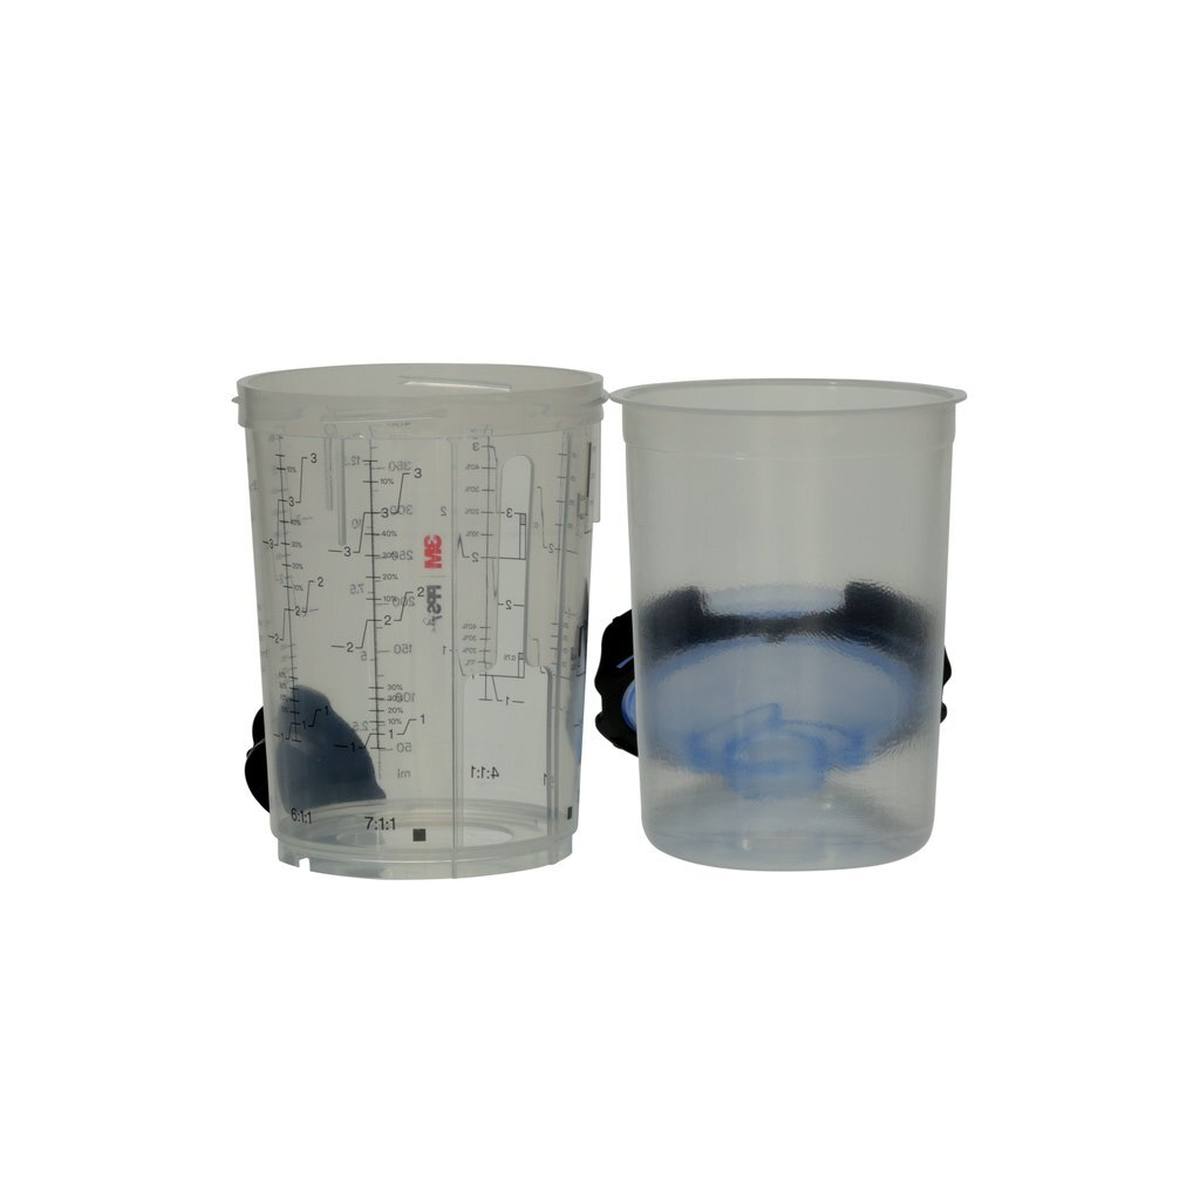 3M PPS Juego Serie 2.0, mediano, 400 ml, filtro de 125Î¼, 50 vasos interiores / 50 tapas / 32 tapones / 1 vaso exterior, 26312